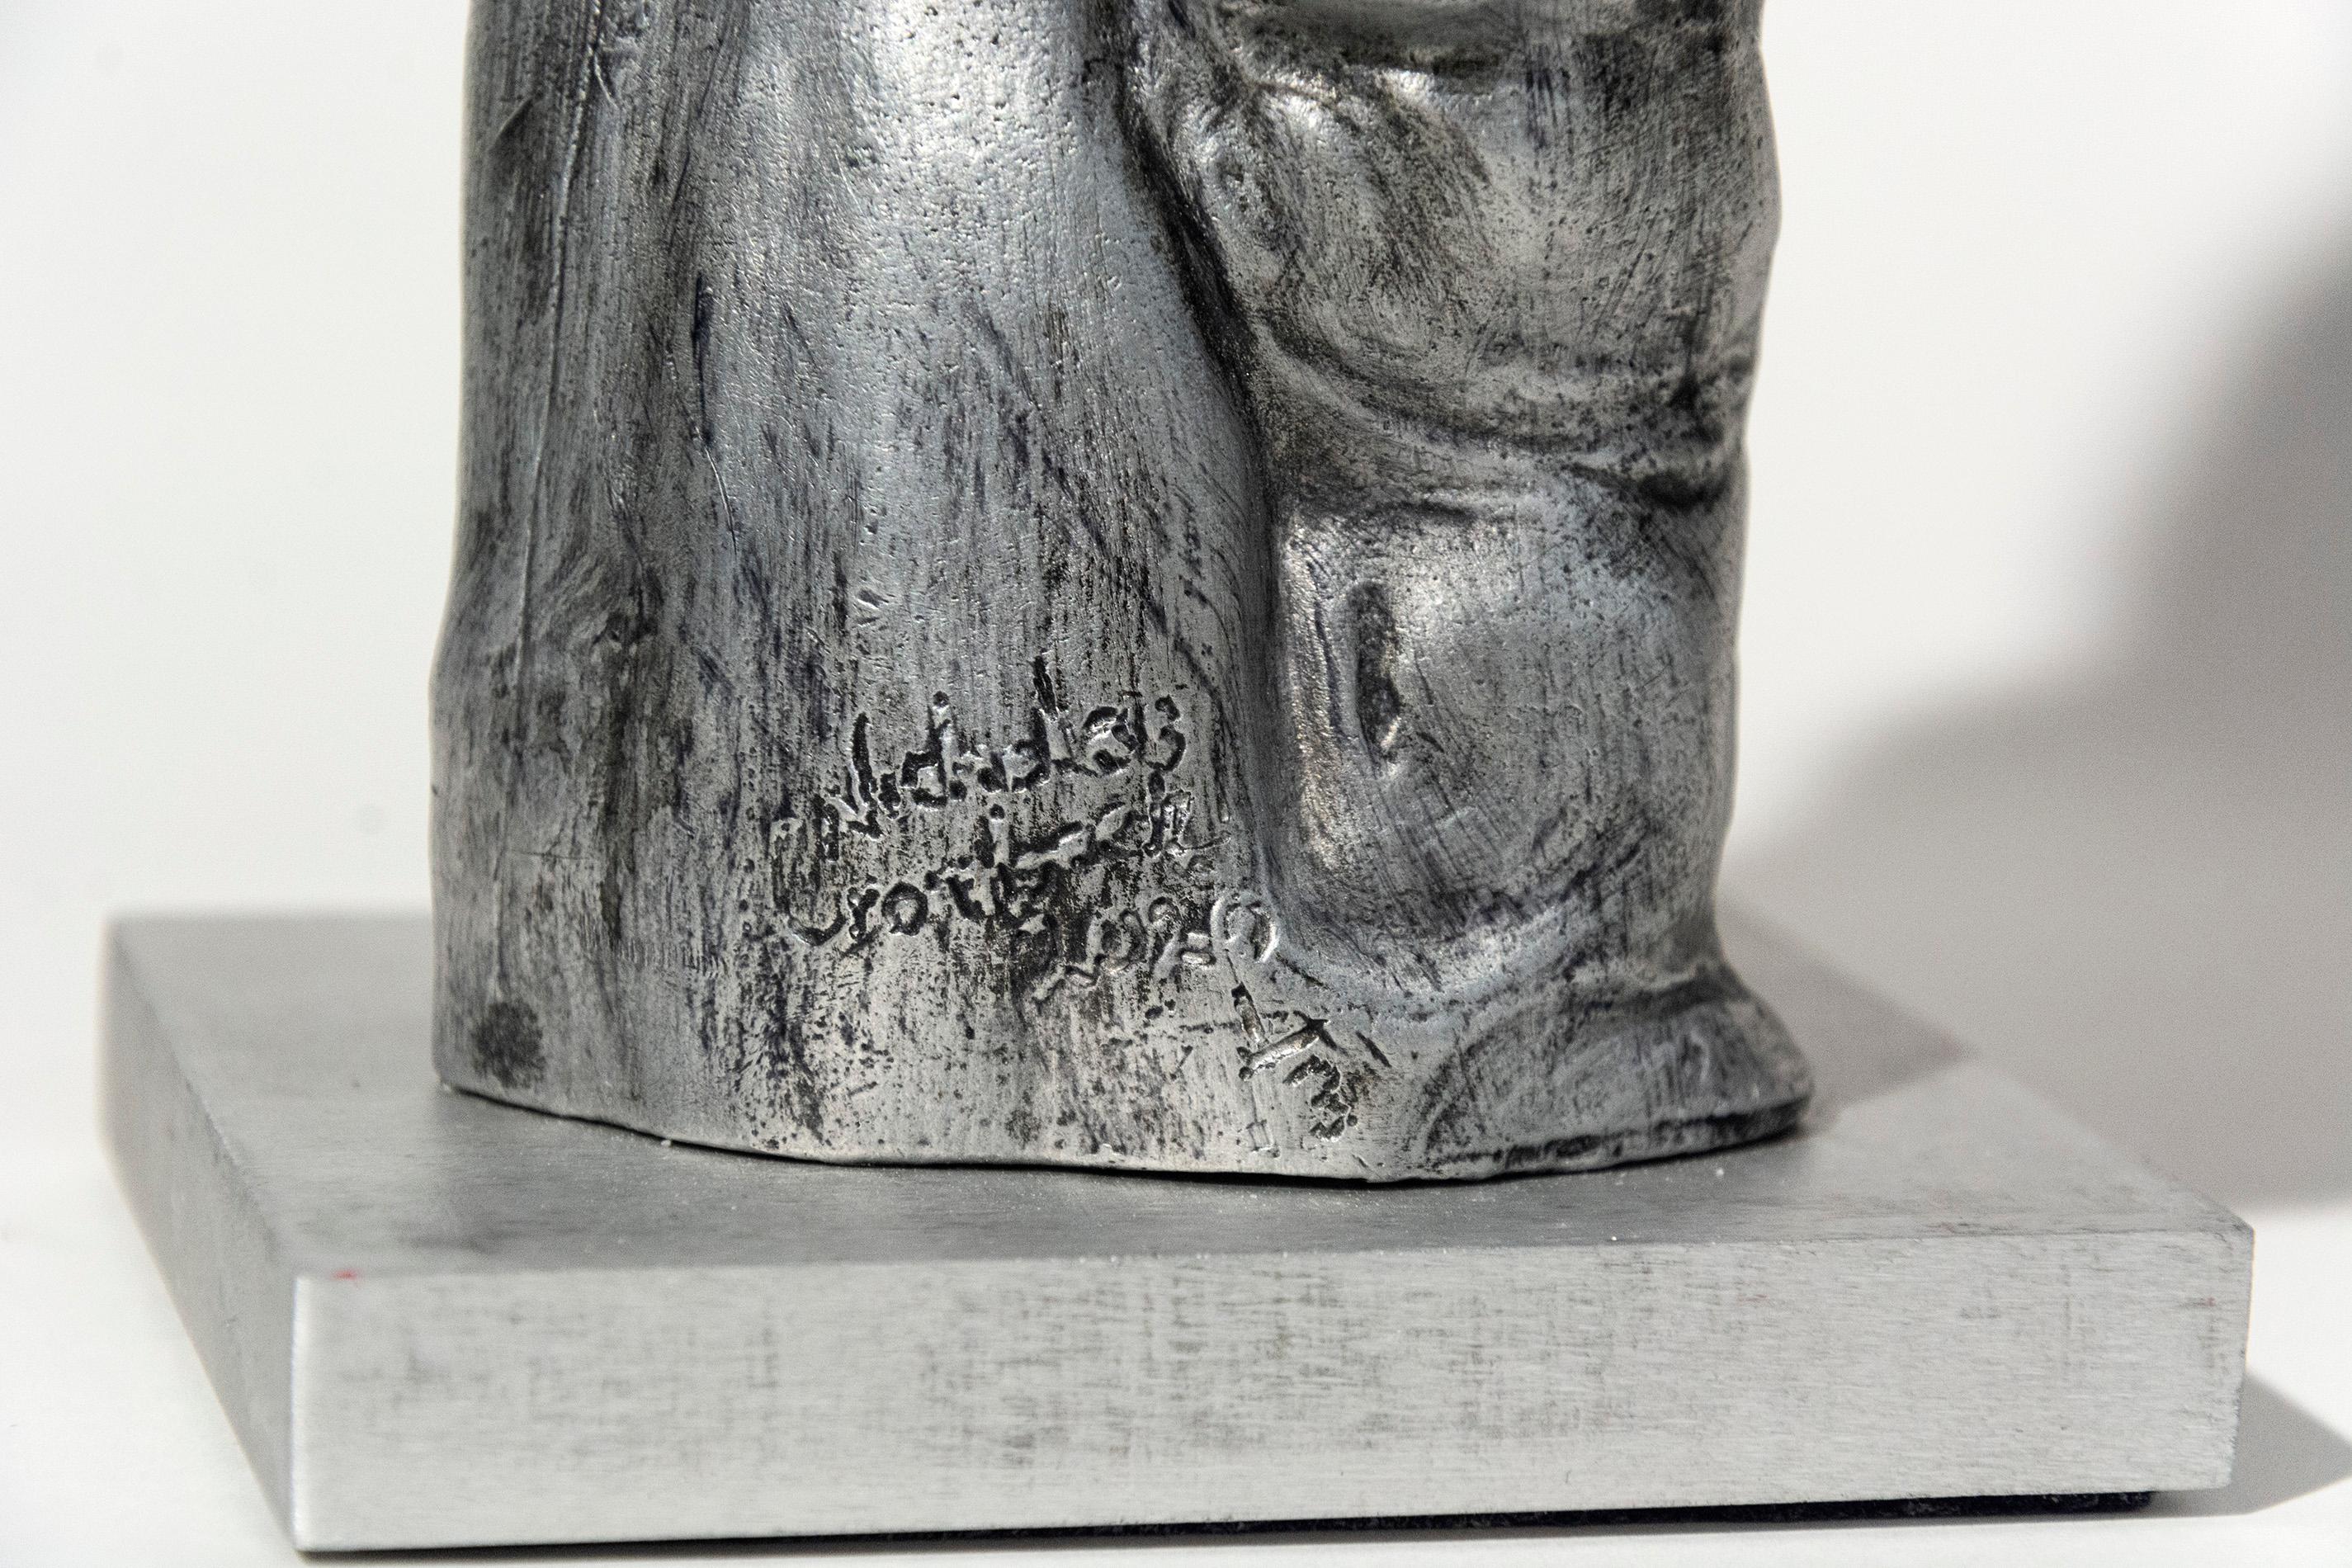 Moulée en aluminium, cette sculpture d'un paon mâle en équilibre reflète le thème principal de l'artiste Nicholas Crombach, à savoir l'interaction entre l'homme et l'animal. Cette sculpture est le numéro 1 d'une édition de 3.

Nicholas Crombach (né